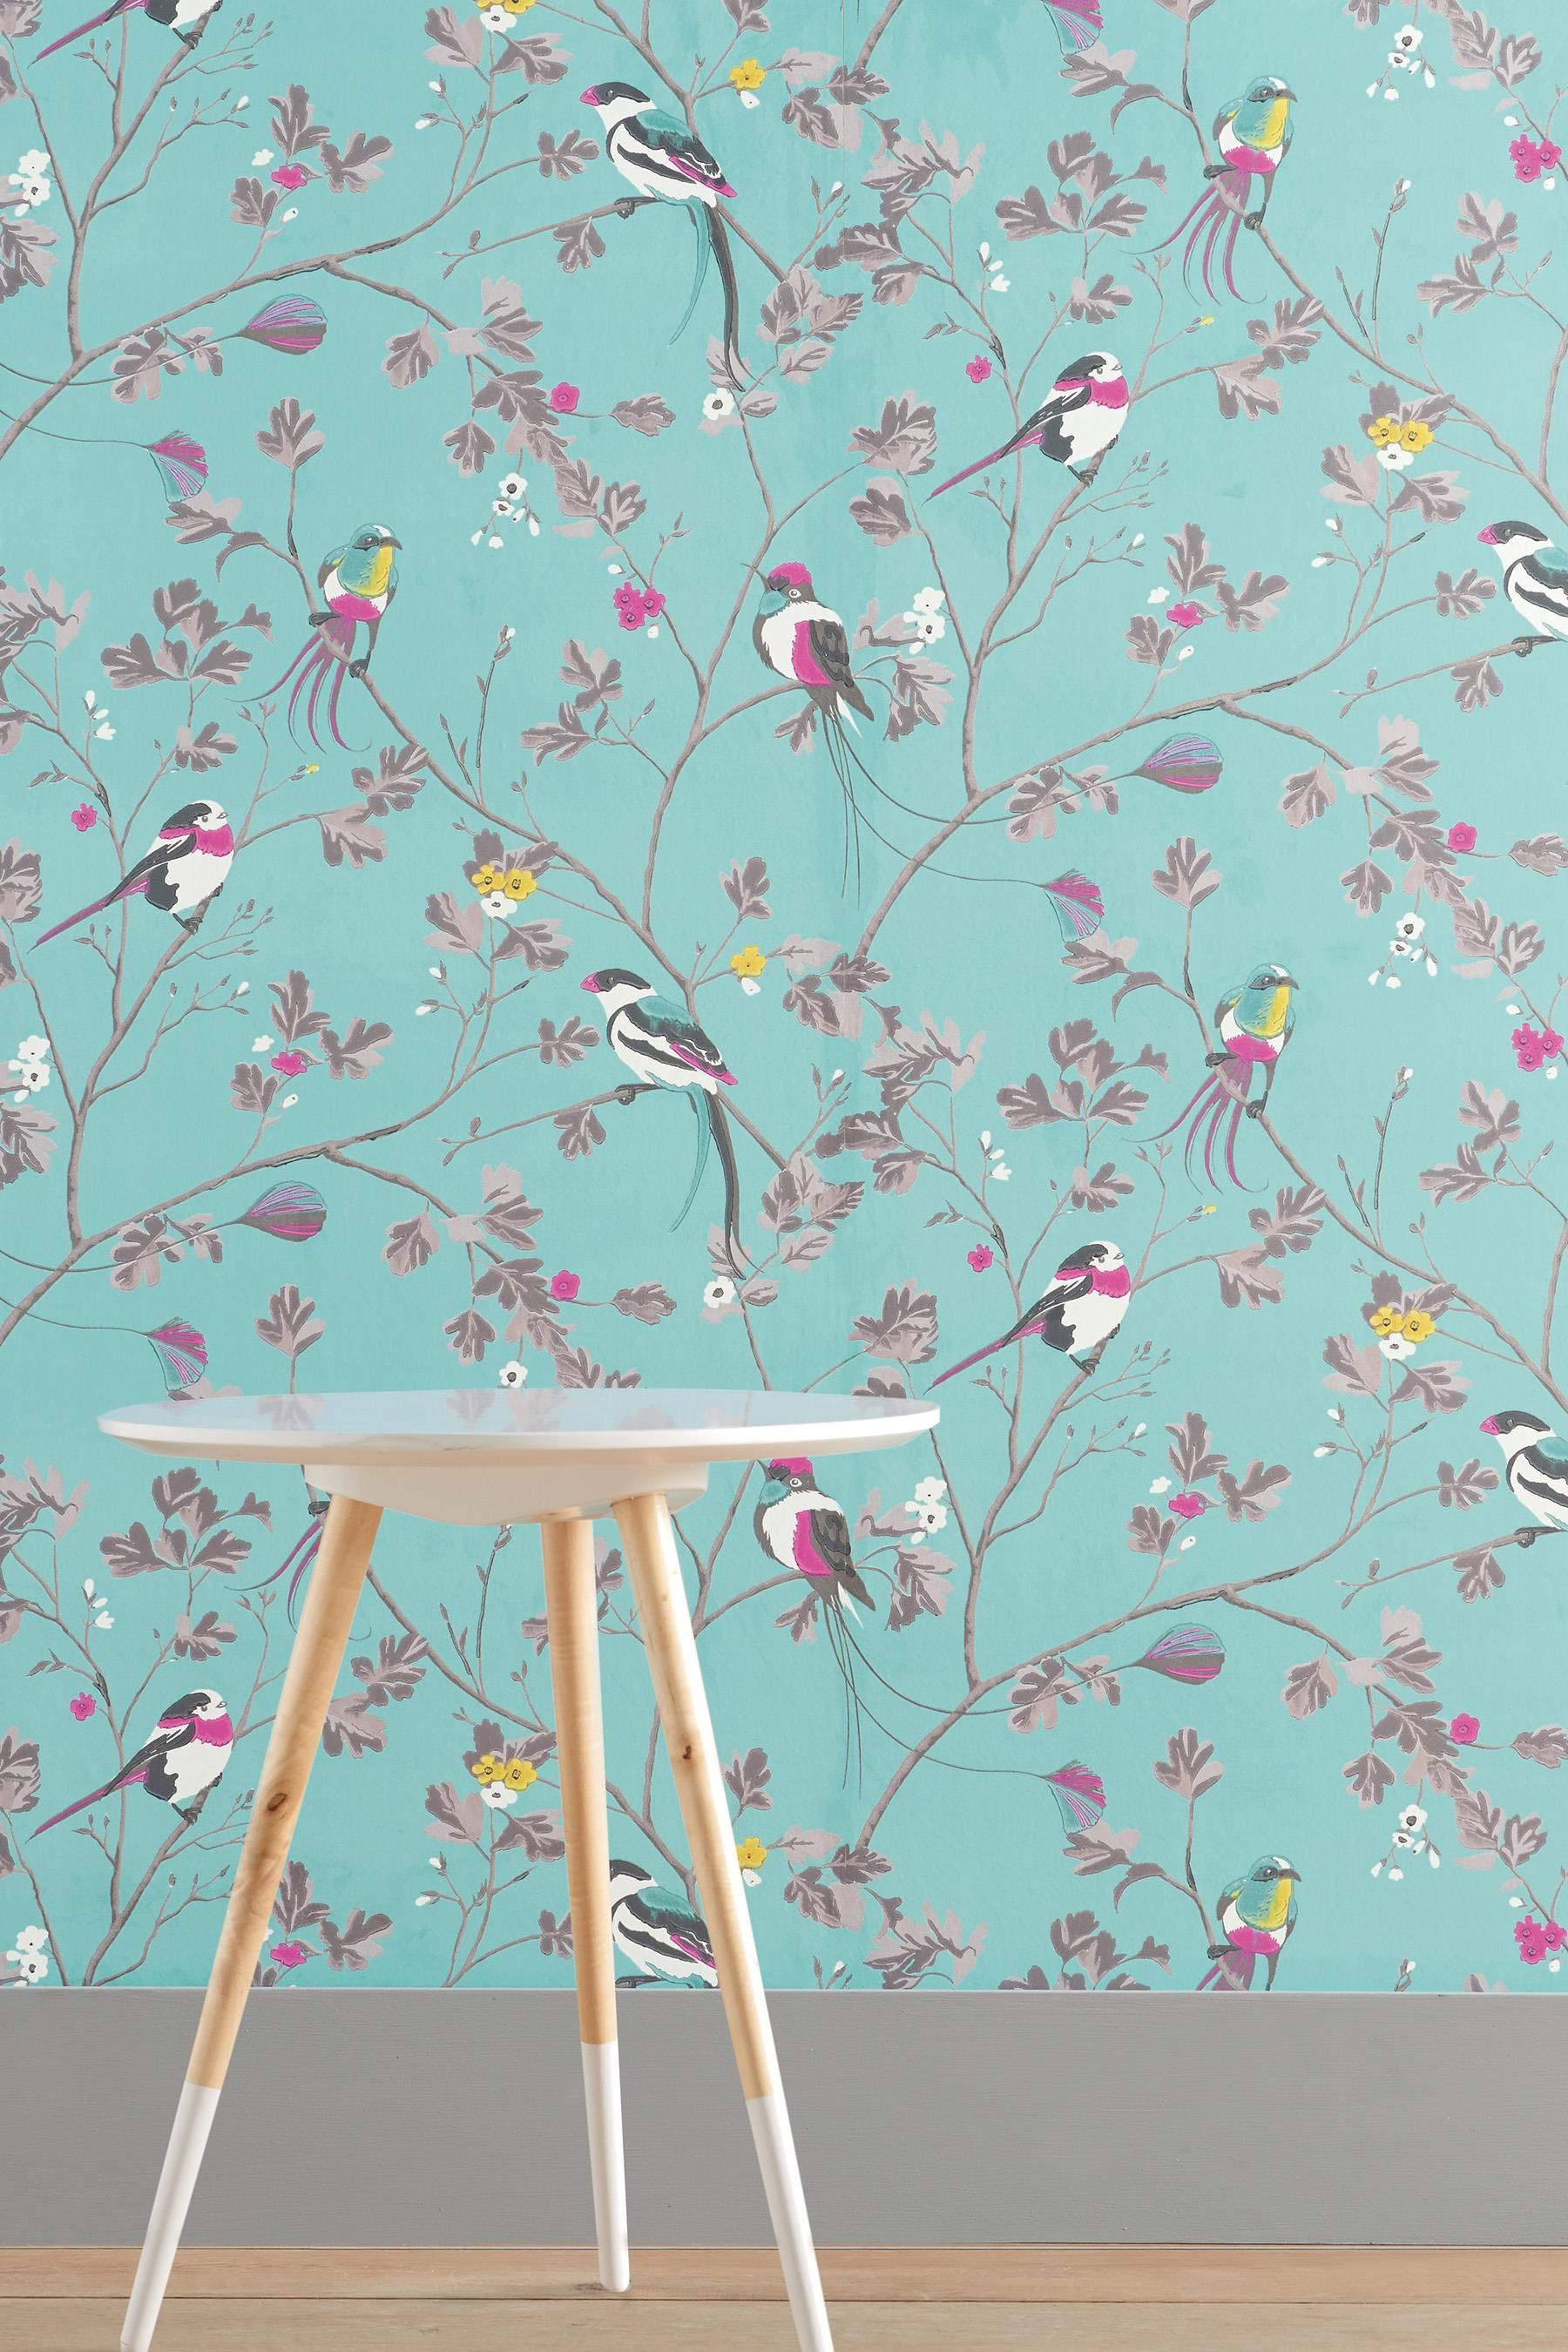 Next Teal Bird , HD Wallpaper & Backgrounds